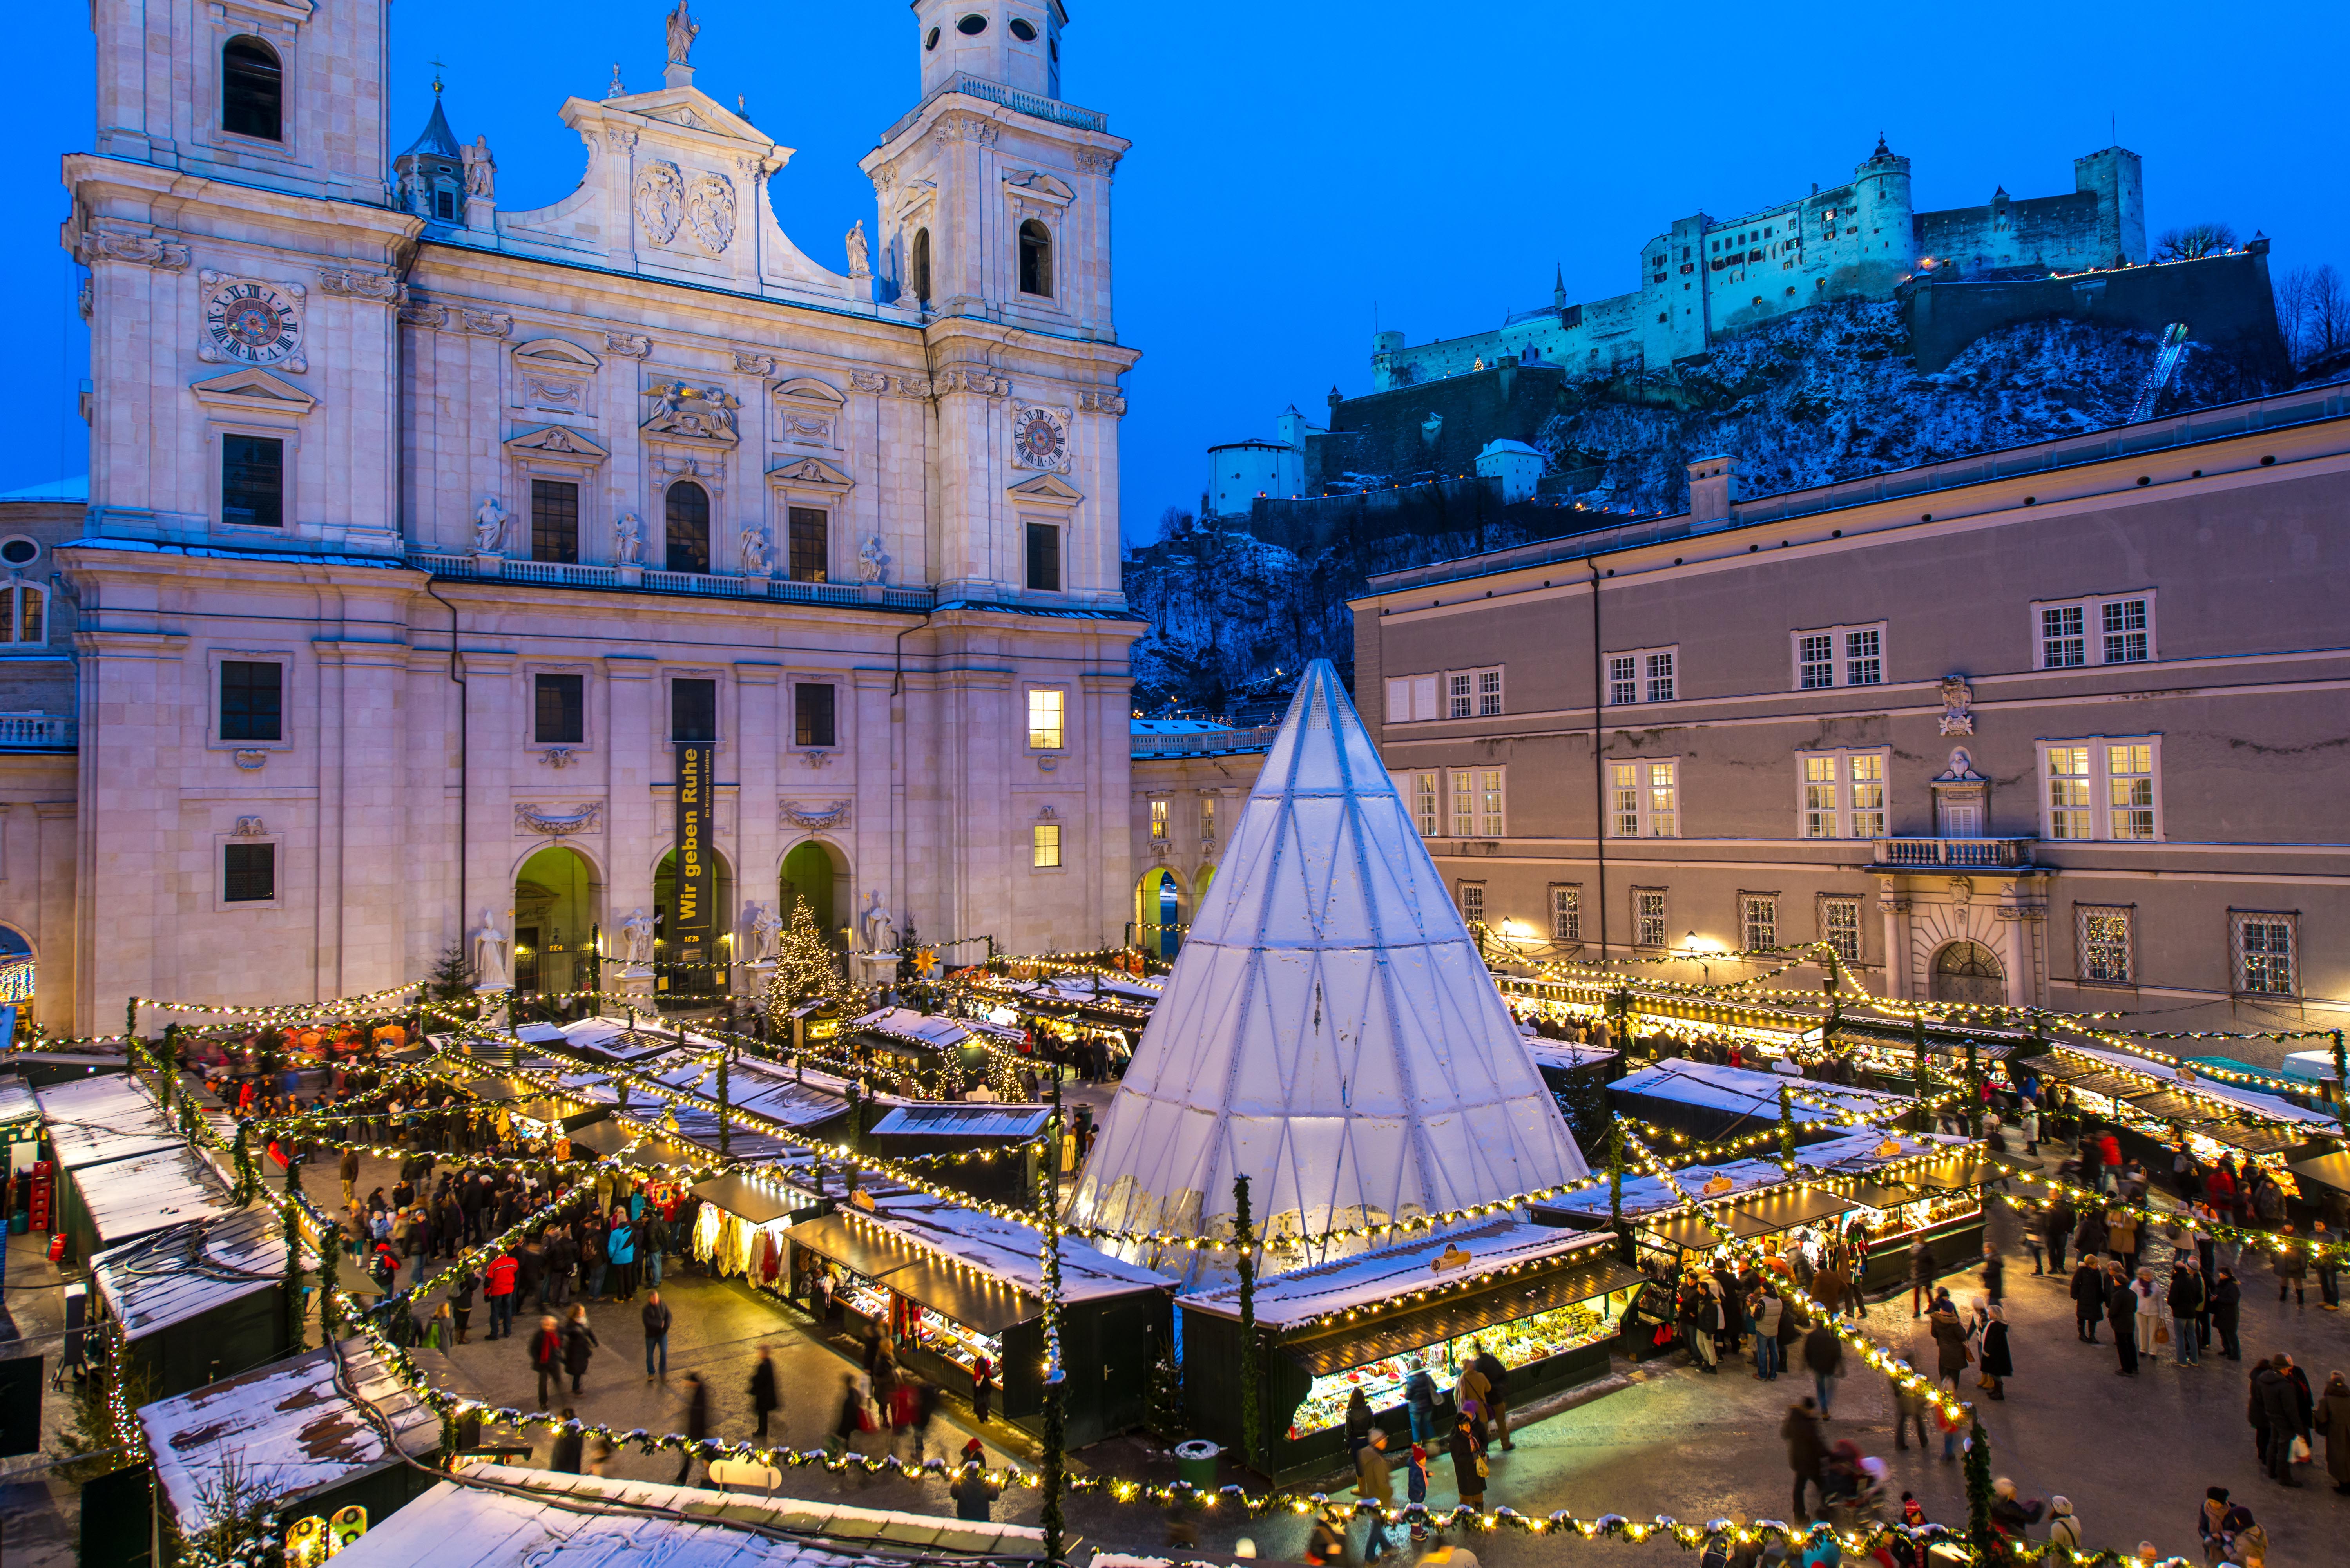 White Christmas in Austria